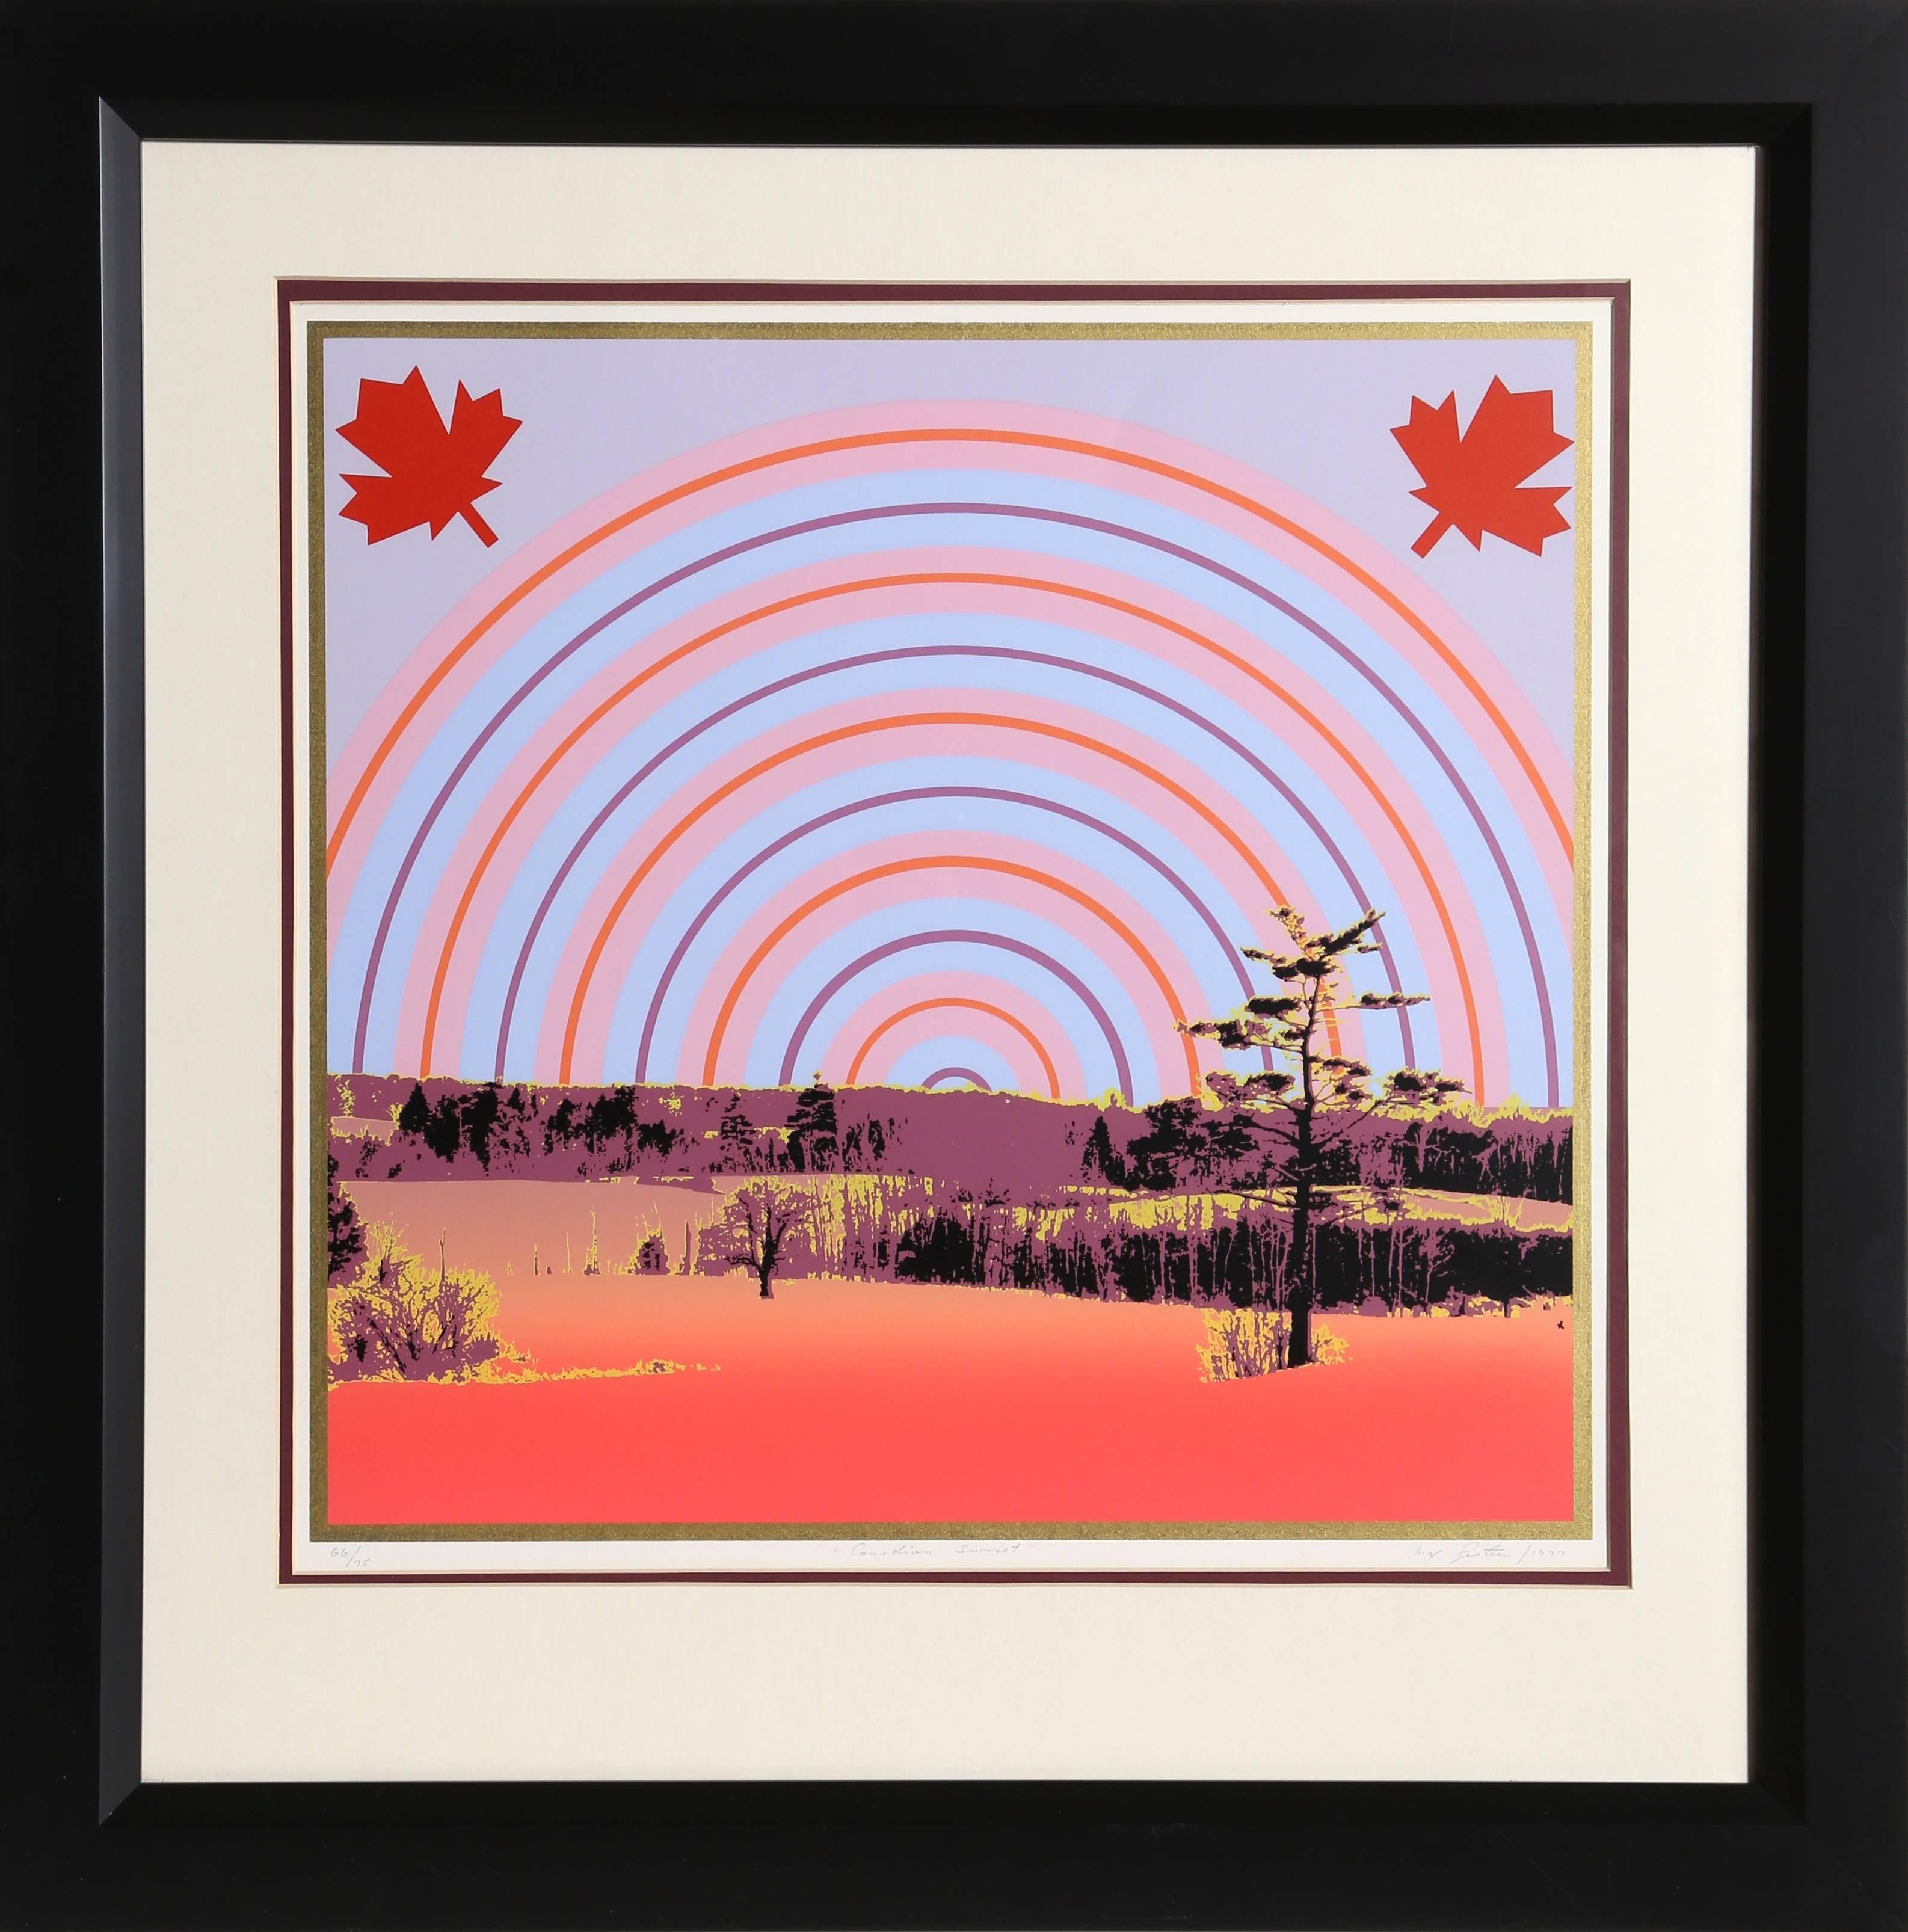 Artiste :  Max Epstein, Canadien (1932 - 2002)
Titre :  Coucher de soleil canadien
Année :  1977
Moyen :  Sérigraphie, signée et numérotée au crayon
Edition :  66/75
Taille de l'image :  17 x 18 pouces
Taille du cadre :  27 x 27 pouces